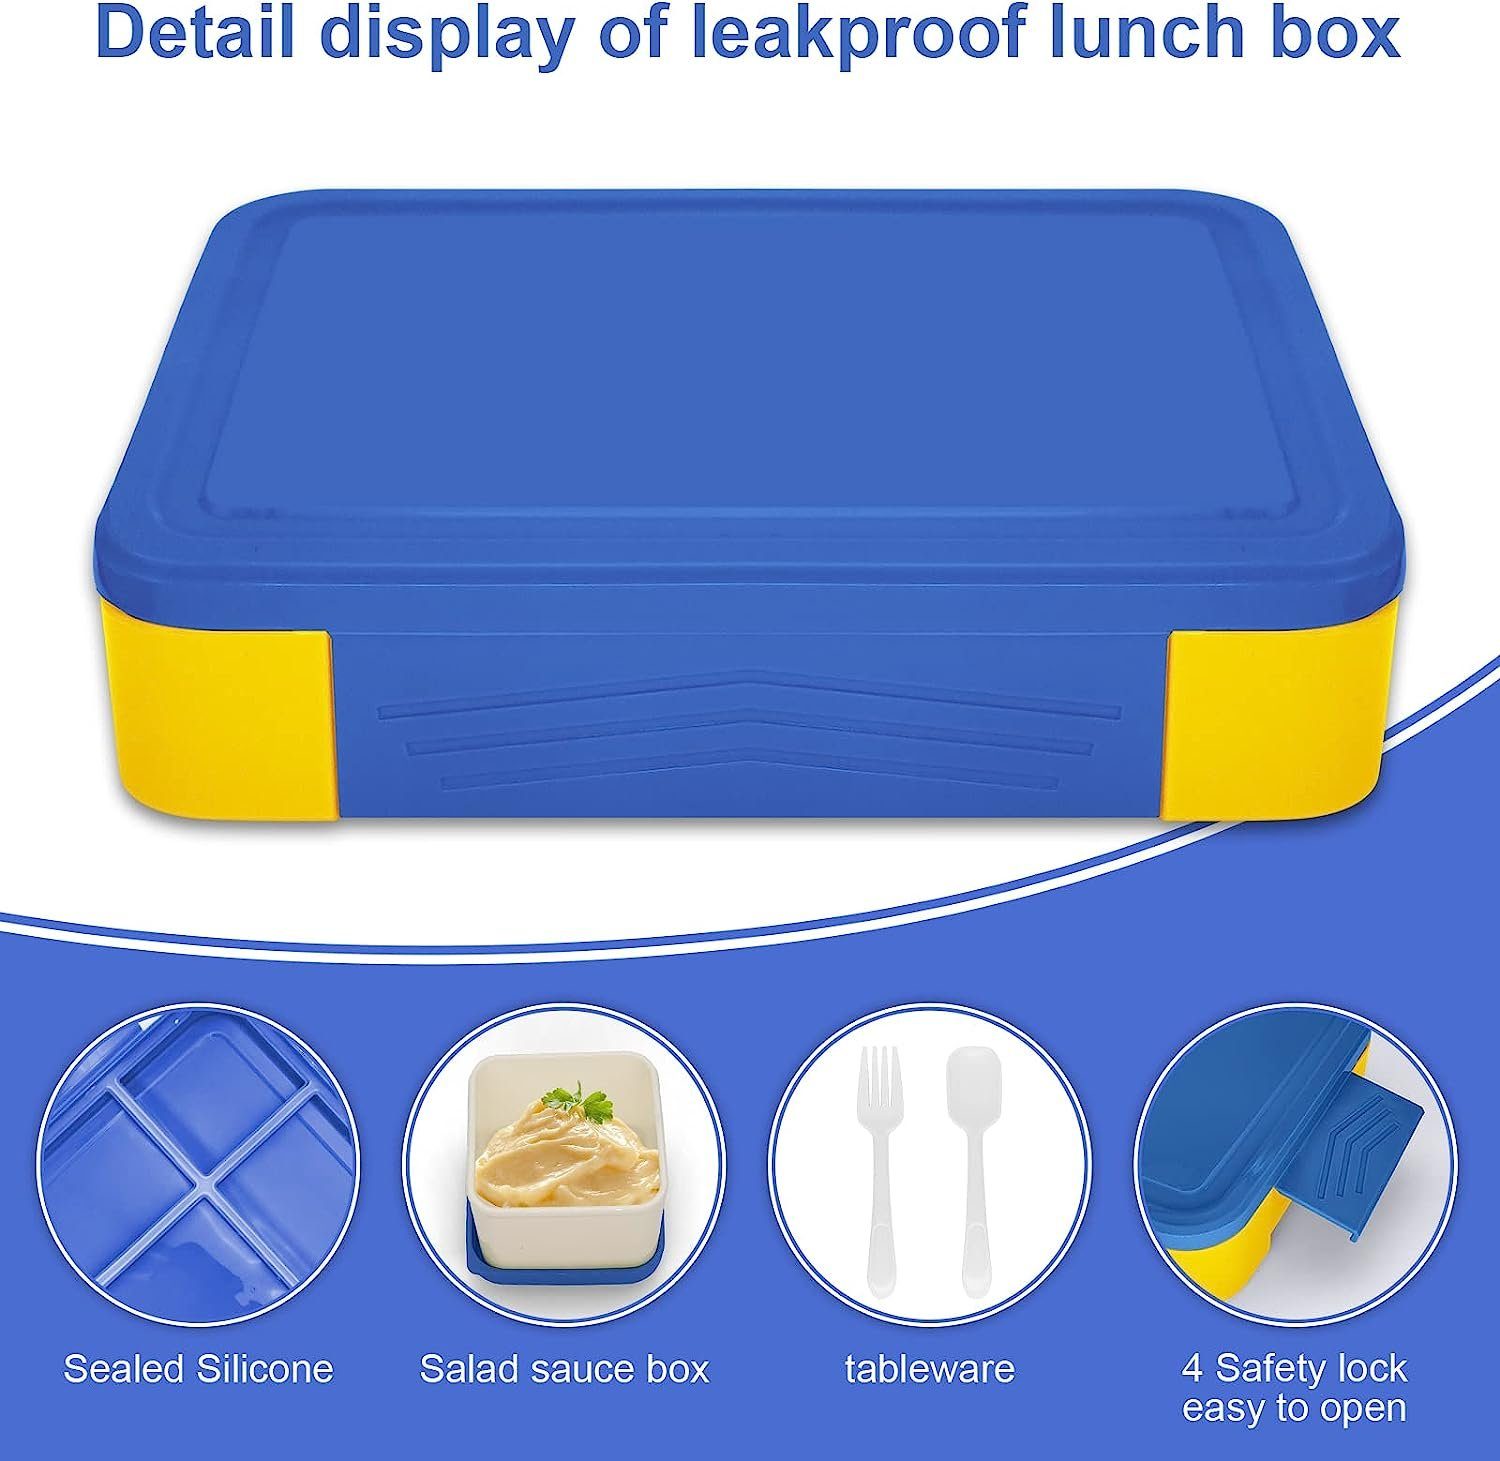 (6 Jausenbox,Vesperdose, XDeer Auslaufsicher/BPA-freiVesperdose 1300ml Kinder Brotdose Blau für Fächer) Kinder/Erwachsene Lunchbox